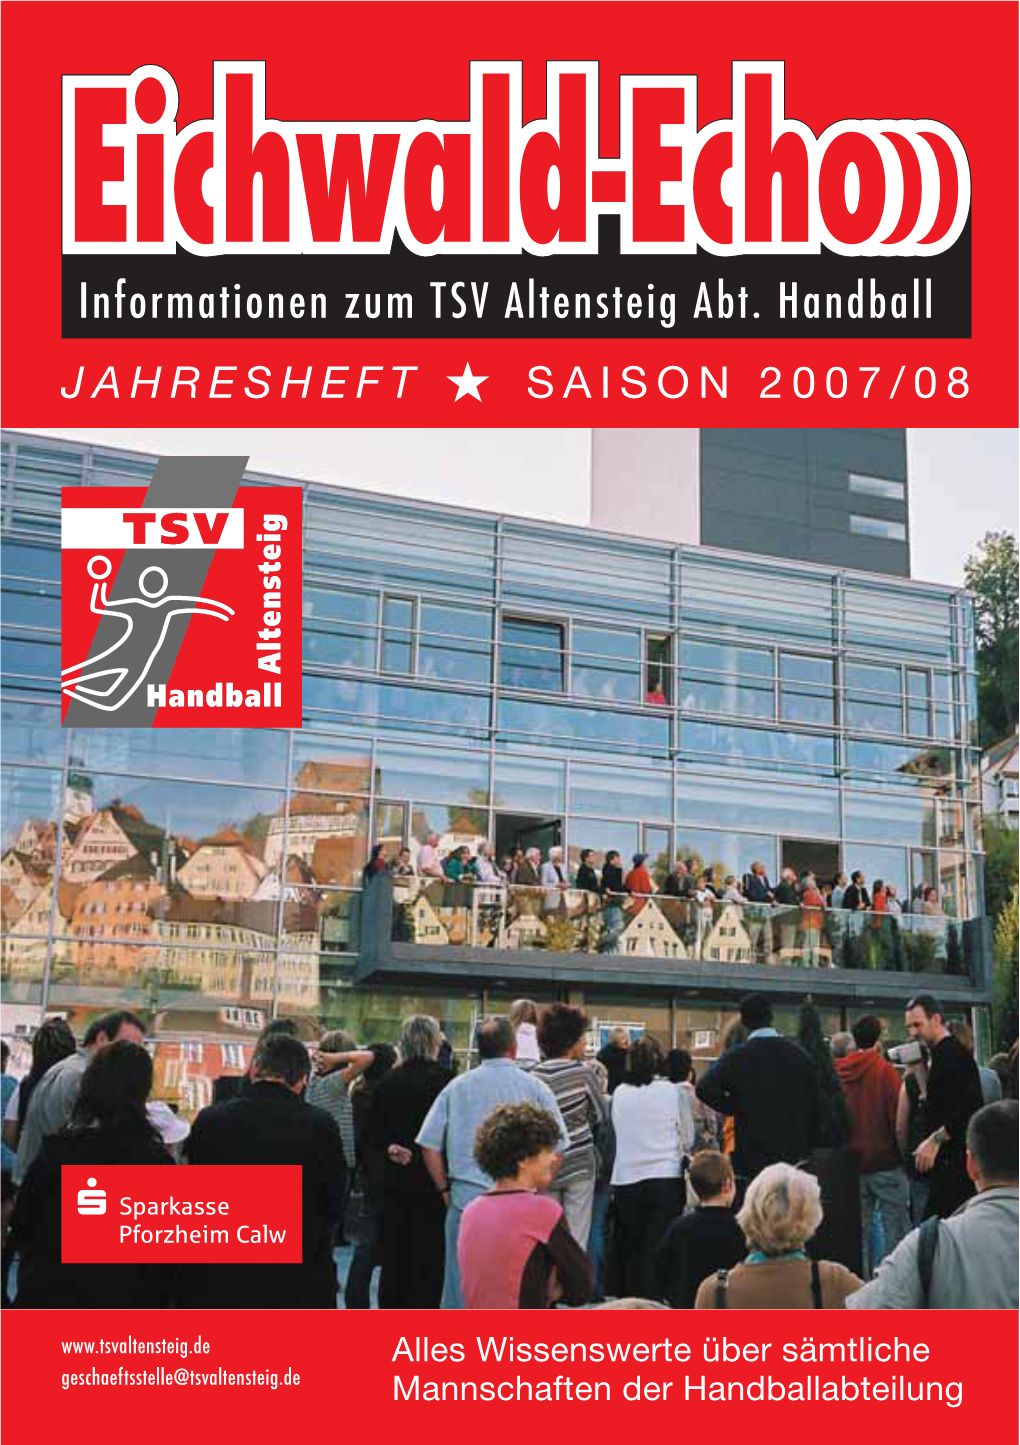 Informationen Zum TSV Altensteig Abt. Handball JAHRESHEFT Ȣ SAISON 2007/08